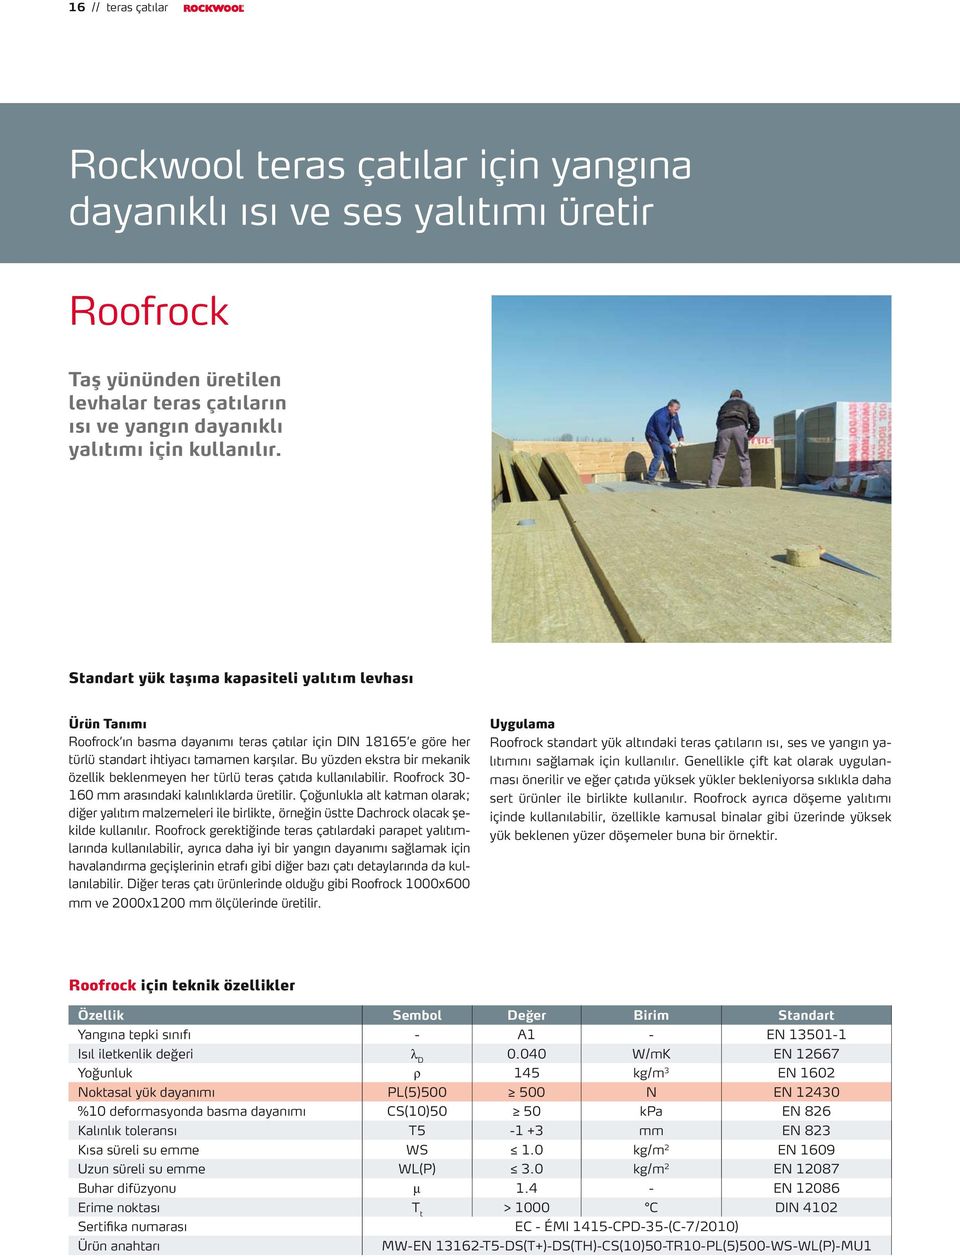 Bu yüzden ekstra bir mekanik özellik beklenmeyen her türlü teras çatıda kullanılabilir. Roofrock 30-160 mm arasındaki kalınlıklarda üretilir.